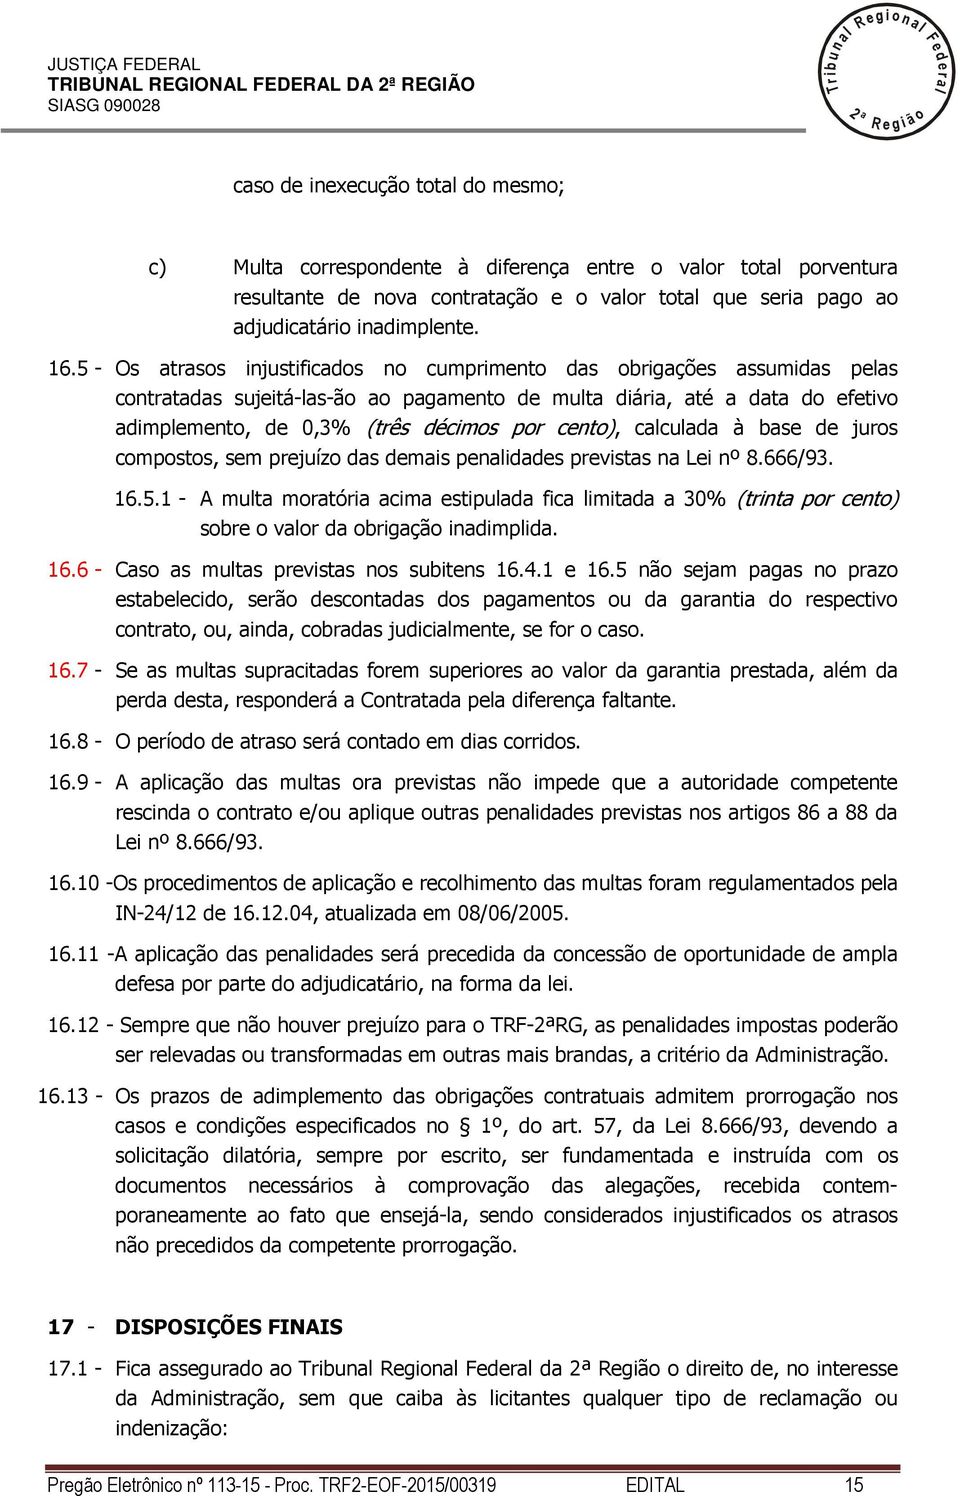 5 - Os atrasos injustificados no cumprimento das obrigações assumidas peas contratadas sujeitá-as-ão ao pagamento de muta diária, até a data do efetivo adimpemento, de 0,3% (três décimos por cento),